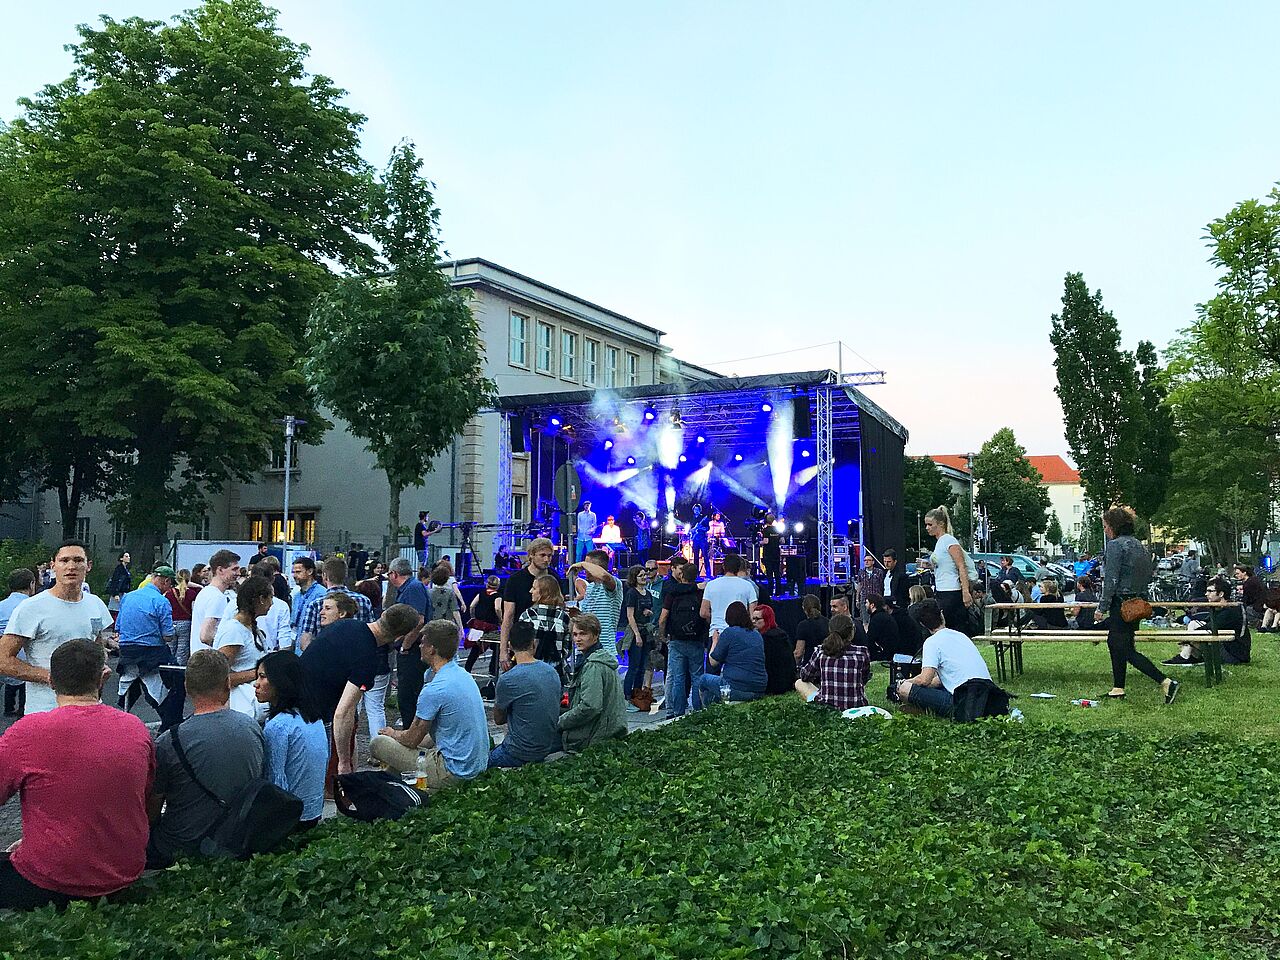 Fernaufnahme des Fakultätsfests auf dem HTWK Gelände mit Bühne und Studierenden.